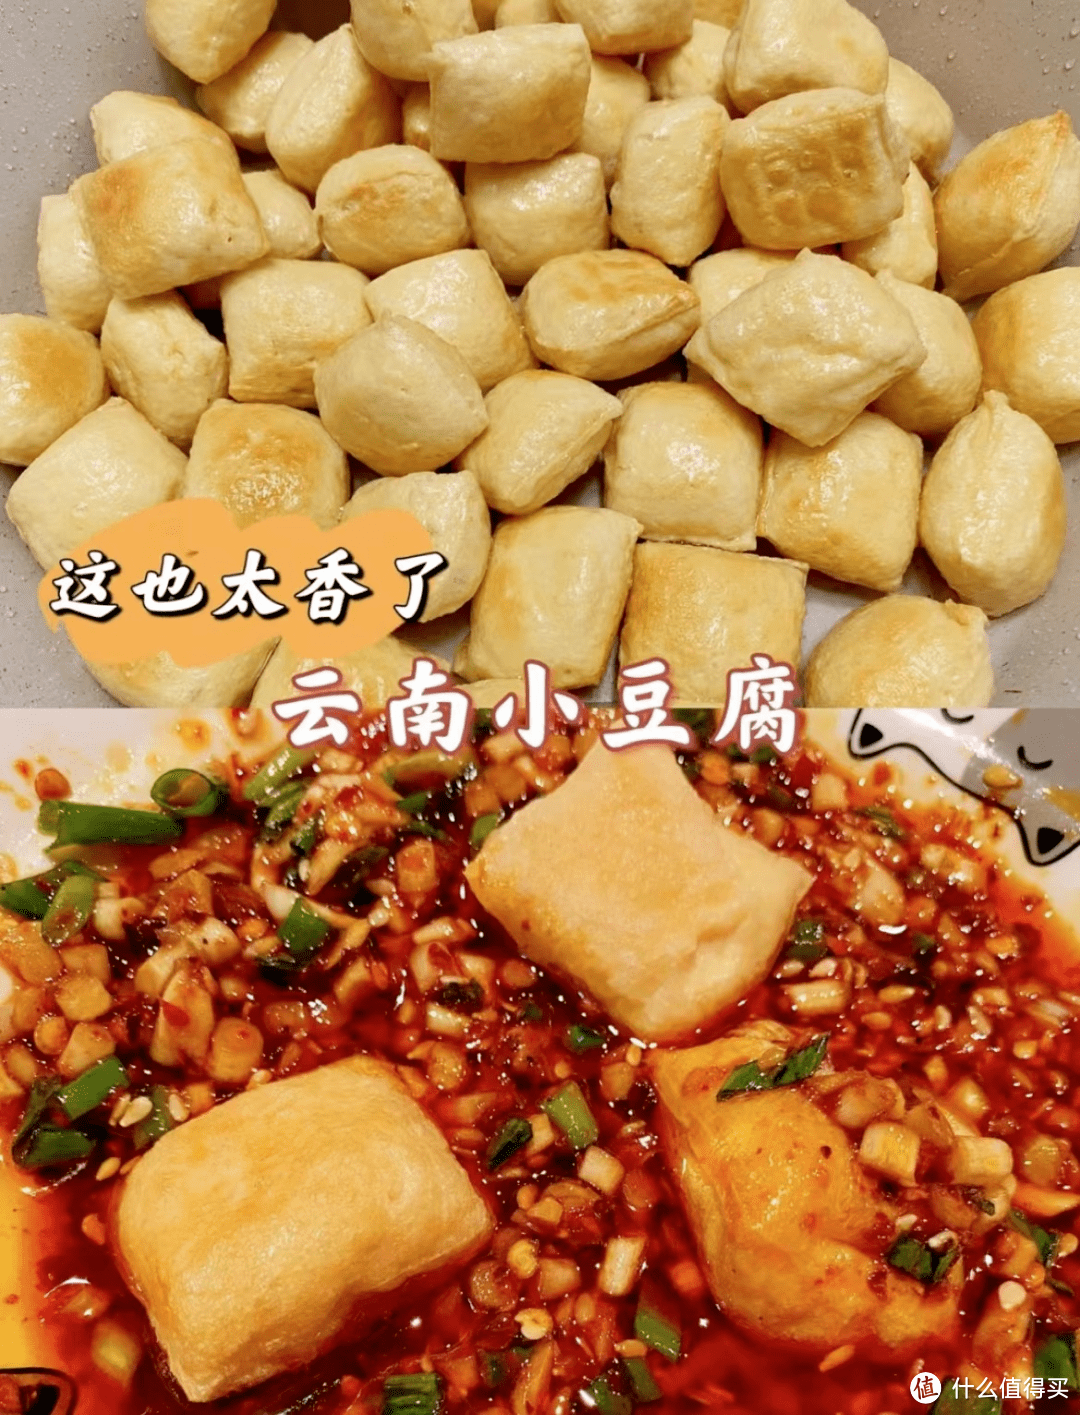 云南石屏爆浆豆腐（18.8元）